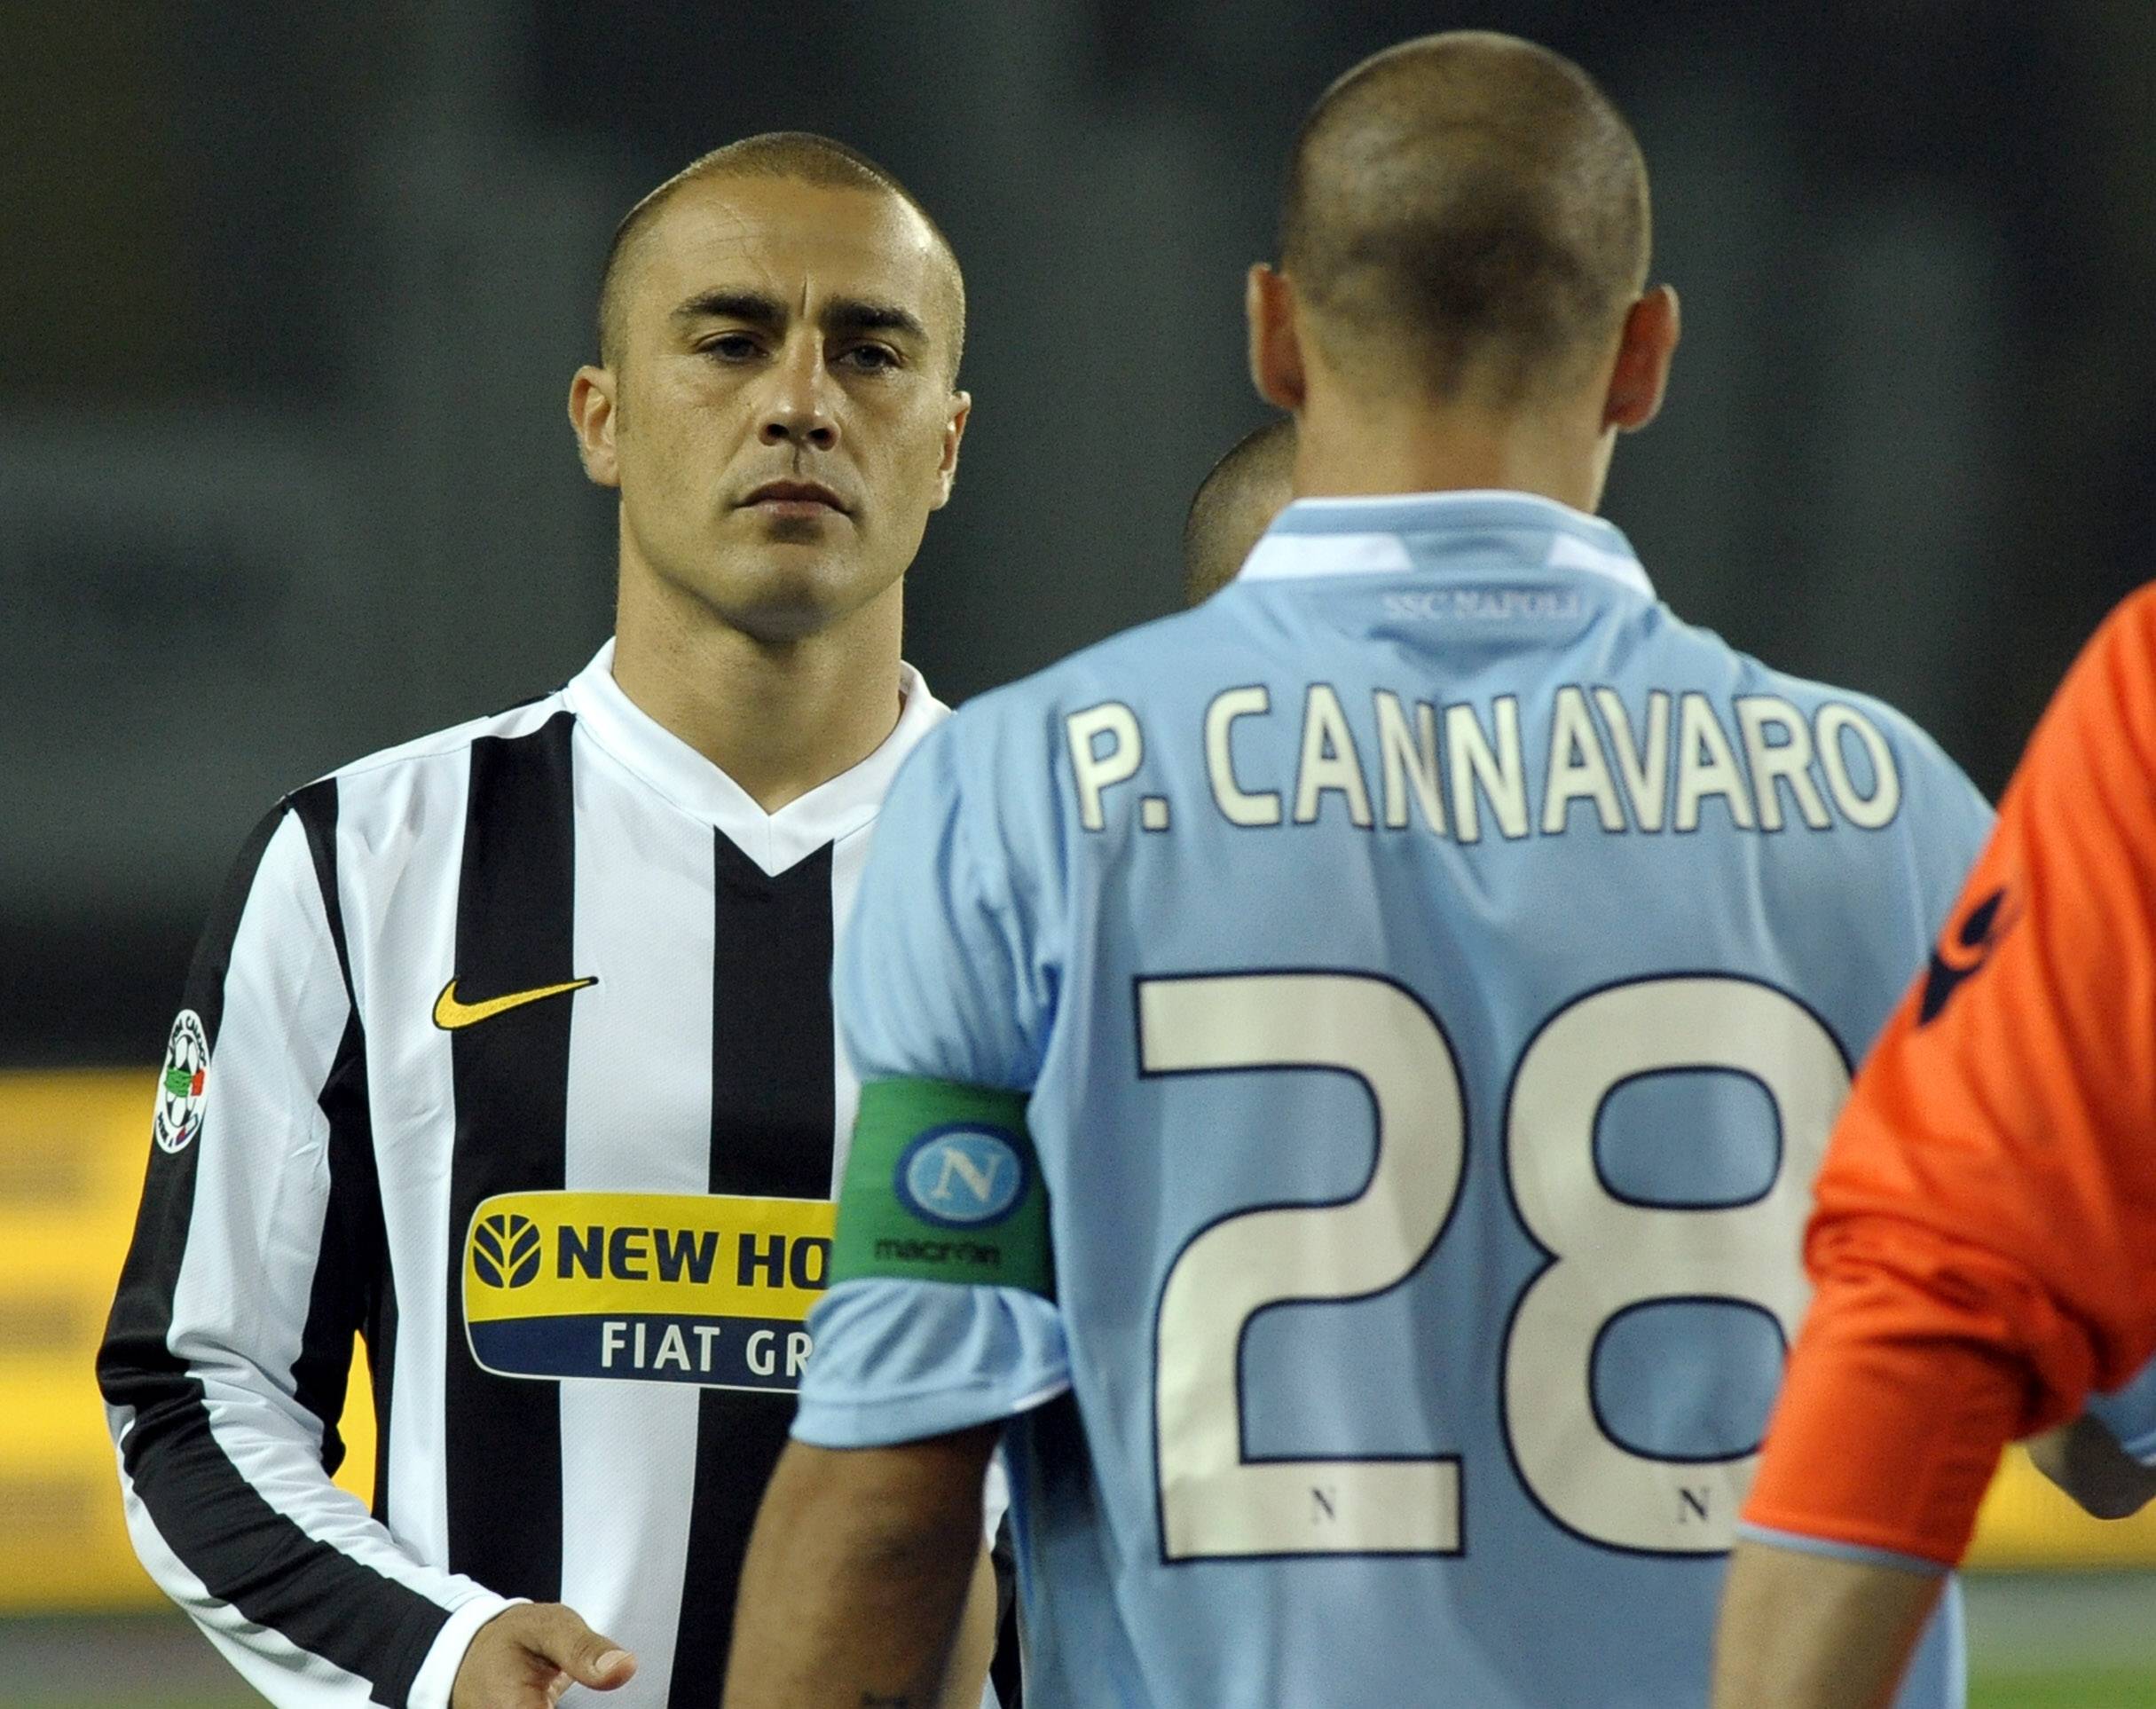 Sommaren 2009 tackade Cannvaro för sig i Real och återvände till Juventus. Trots den goda starten bekräftade italienska klubben att försvararen inte förlänger sitt kontrakt och efter ett år lämnade han klubben ytterligare en gång.